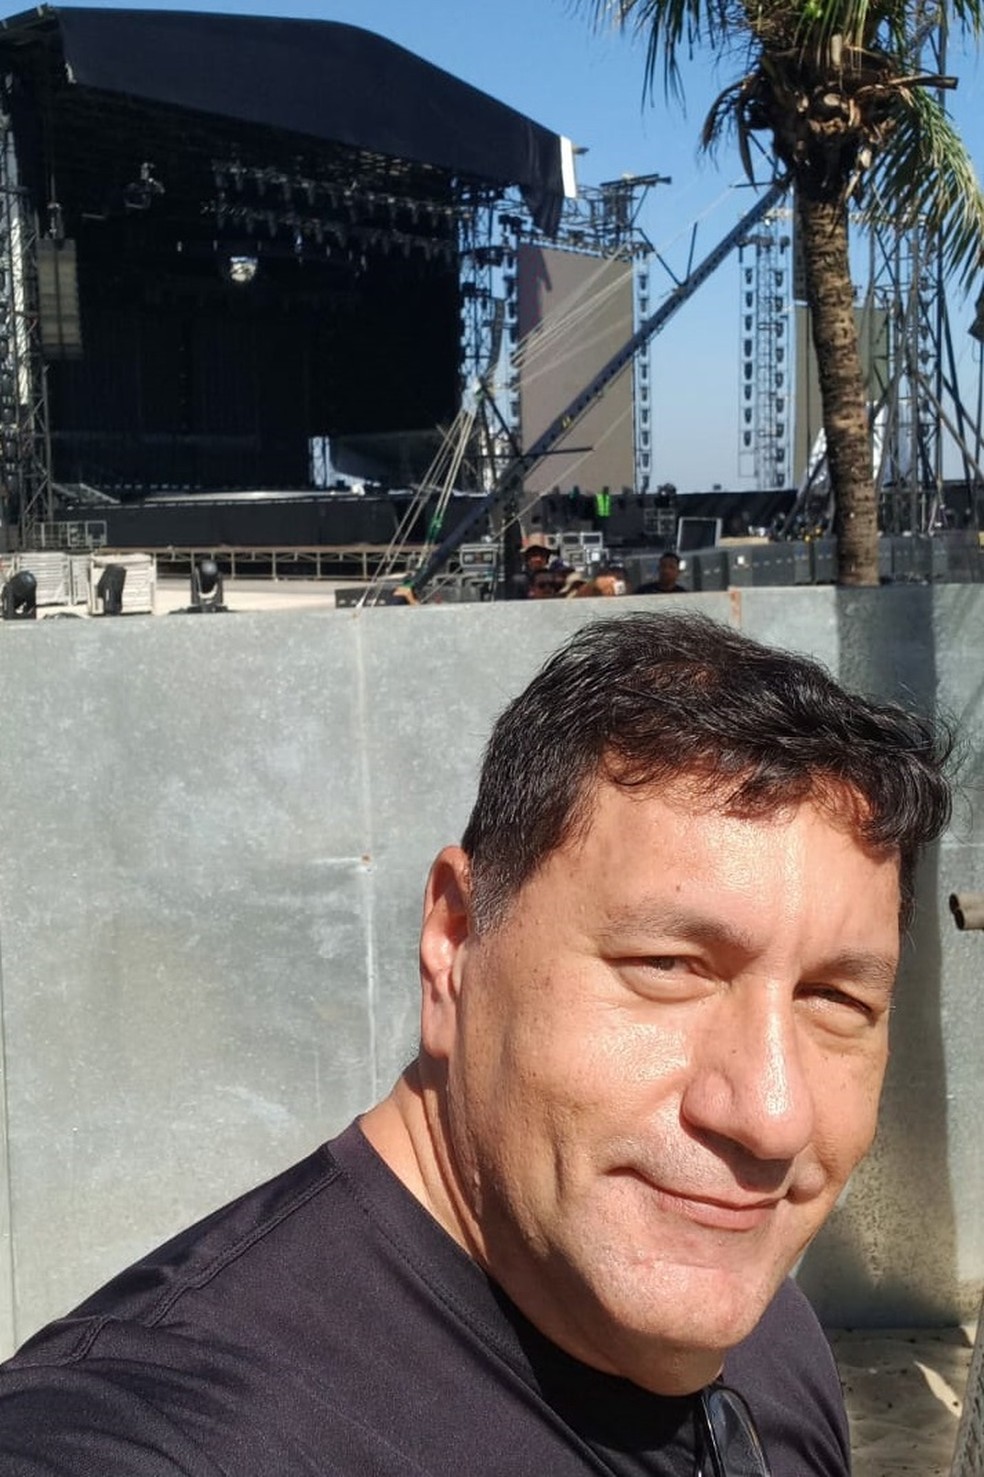 Marcelo em frente ao palco onde Madonna vai se apresentar em Copacabana neste fim de semana — Foto: Arquivo pessoal